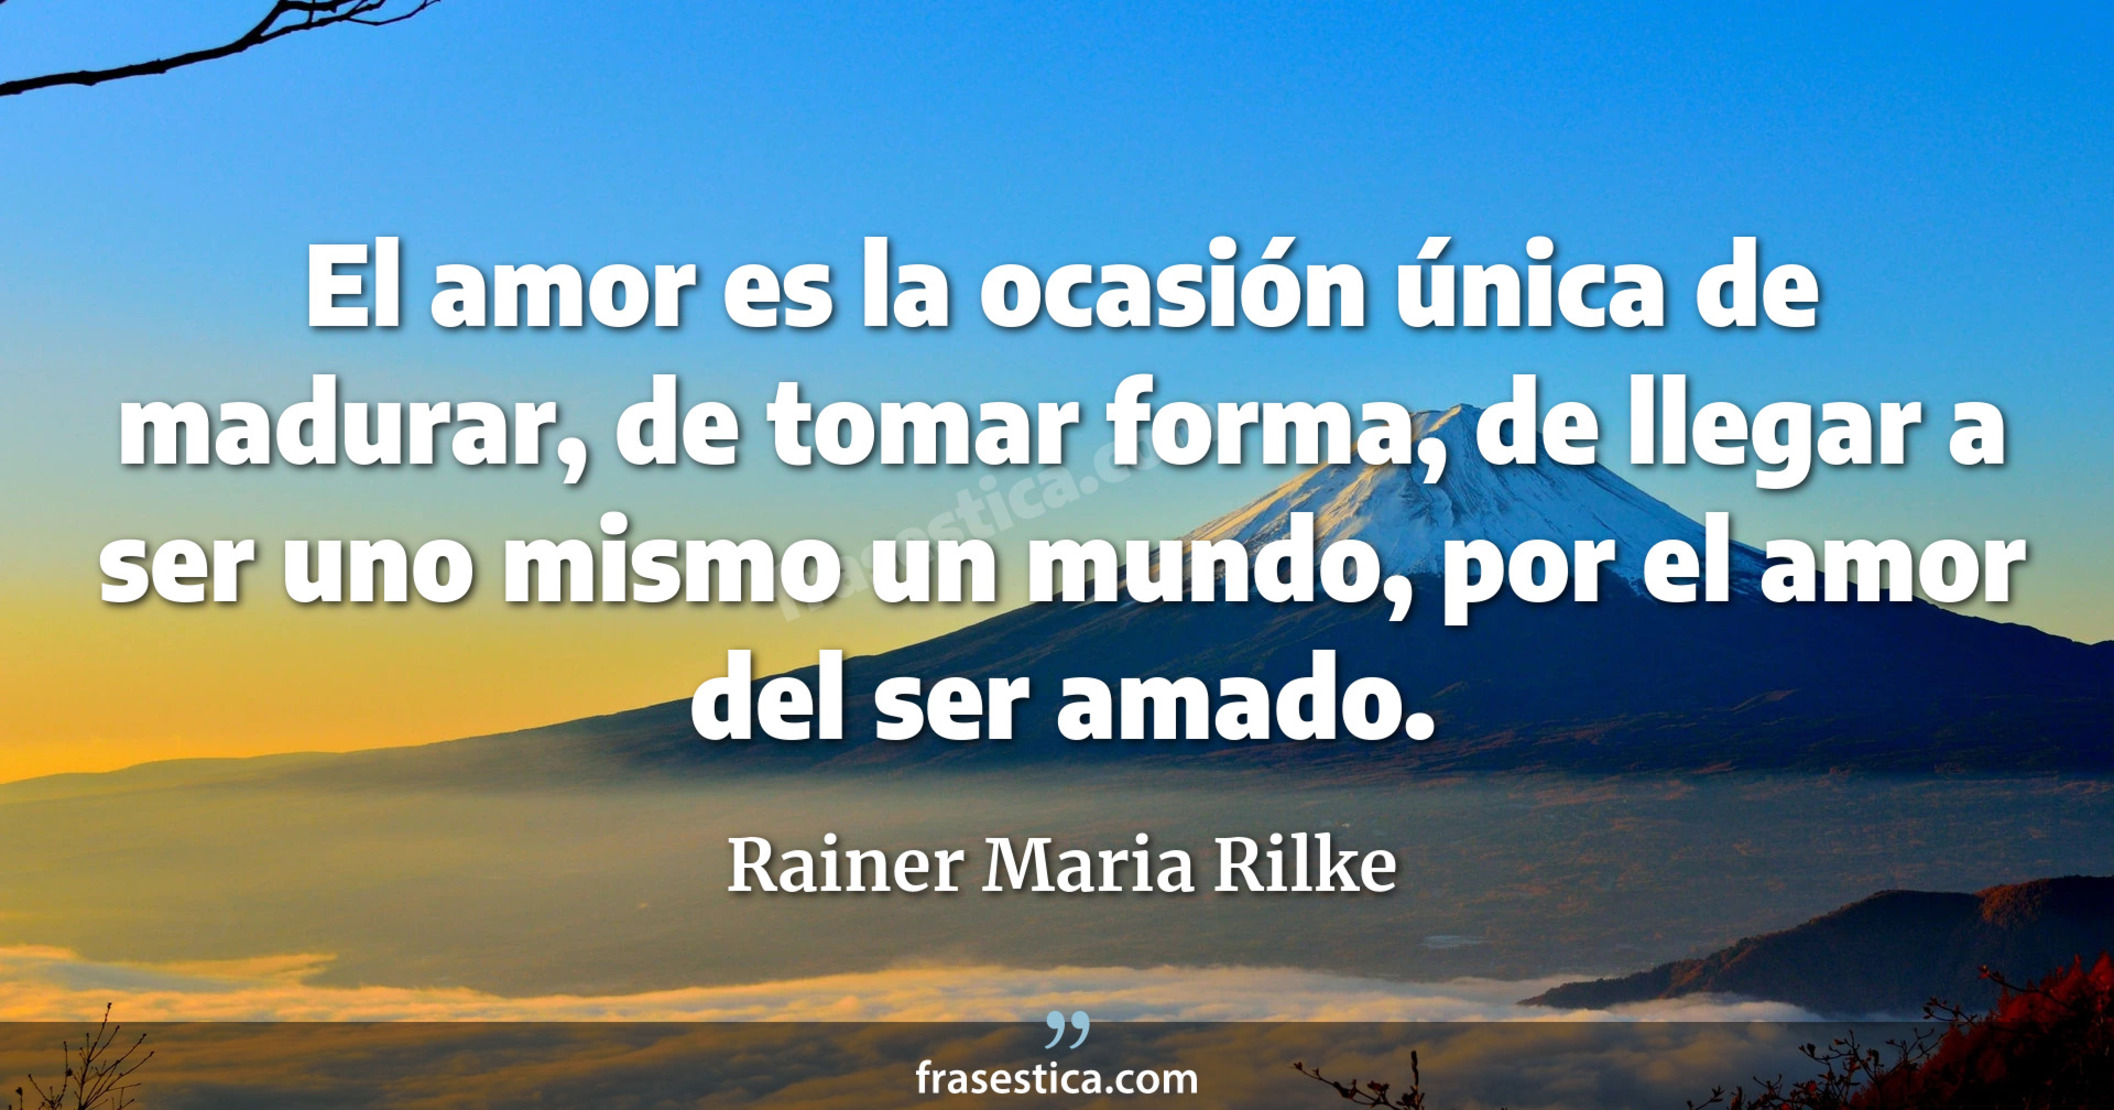 El amor es la ocasión única de madurar, de tomar forma, de llegar a ser uno mismo un mundo, por el amor del ser amado. - Rainer Maria Rilke